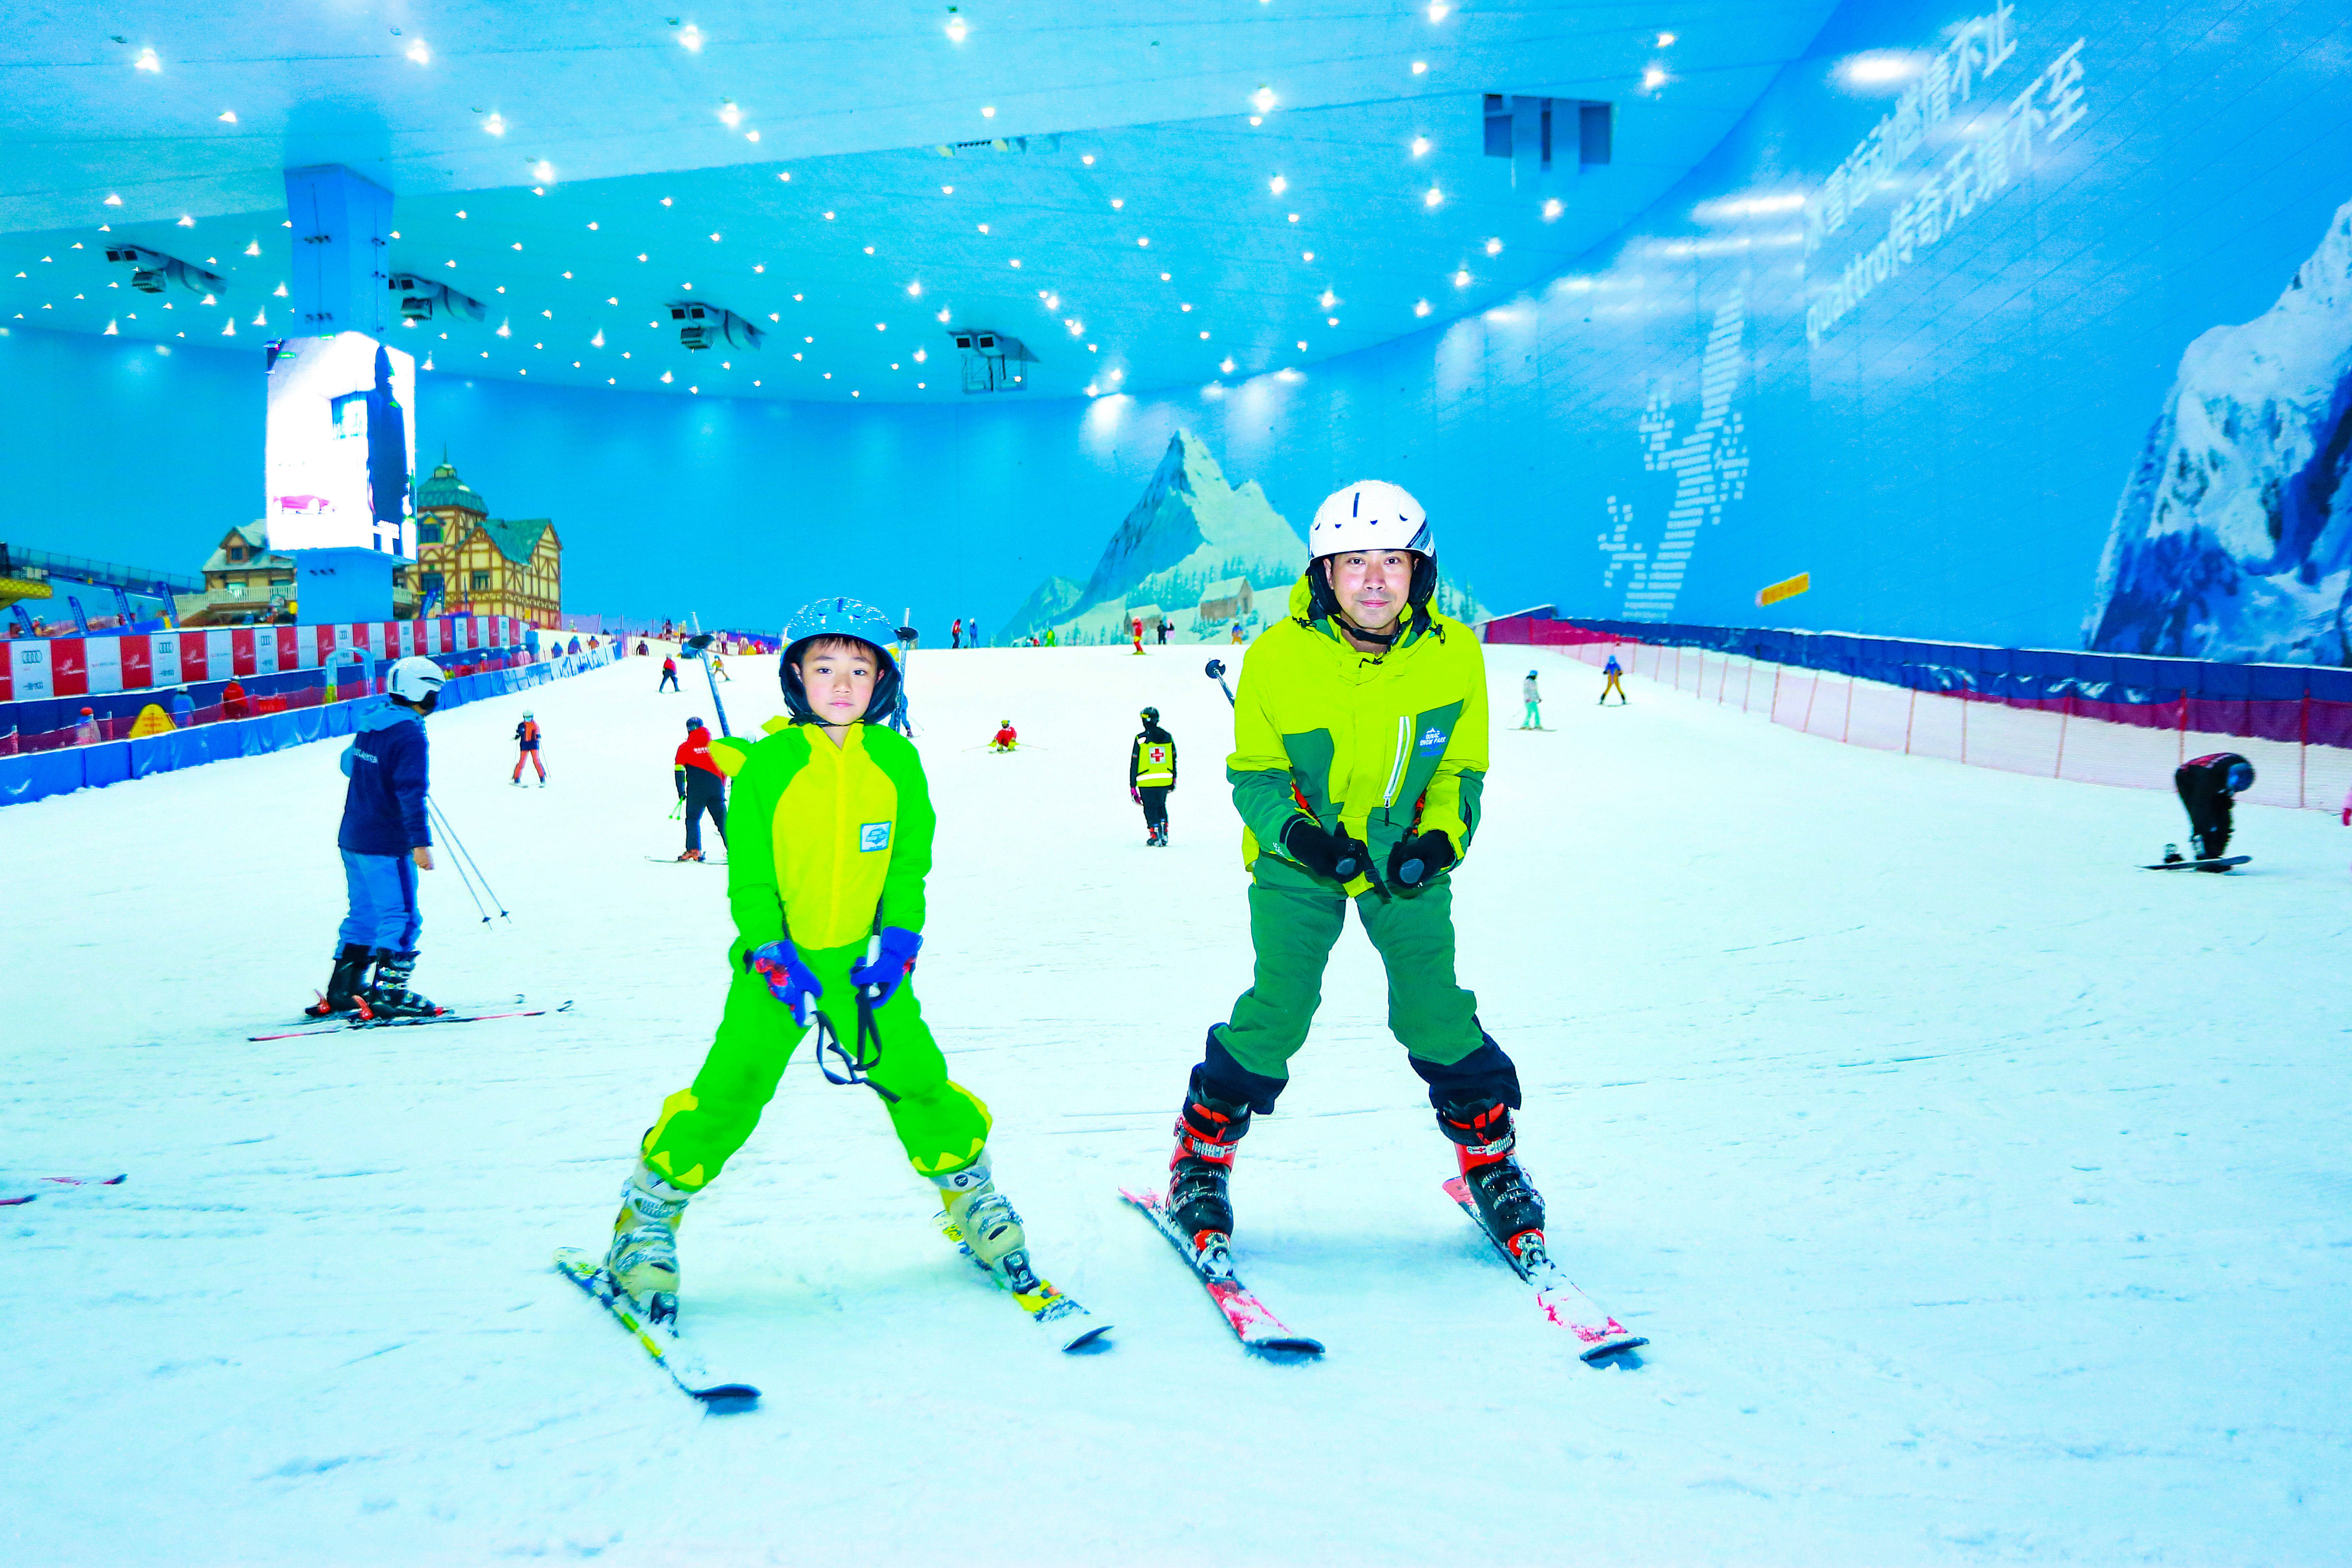 原创暑假亲子去哪玩?广州融创雪世界,滑雪太好玩了